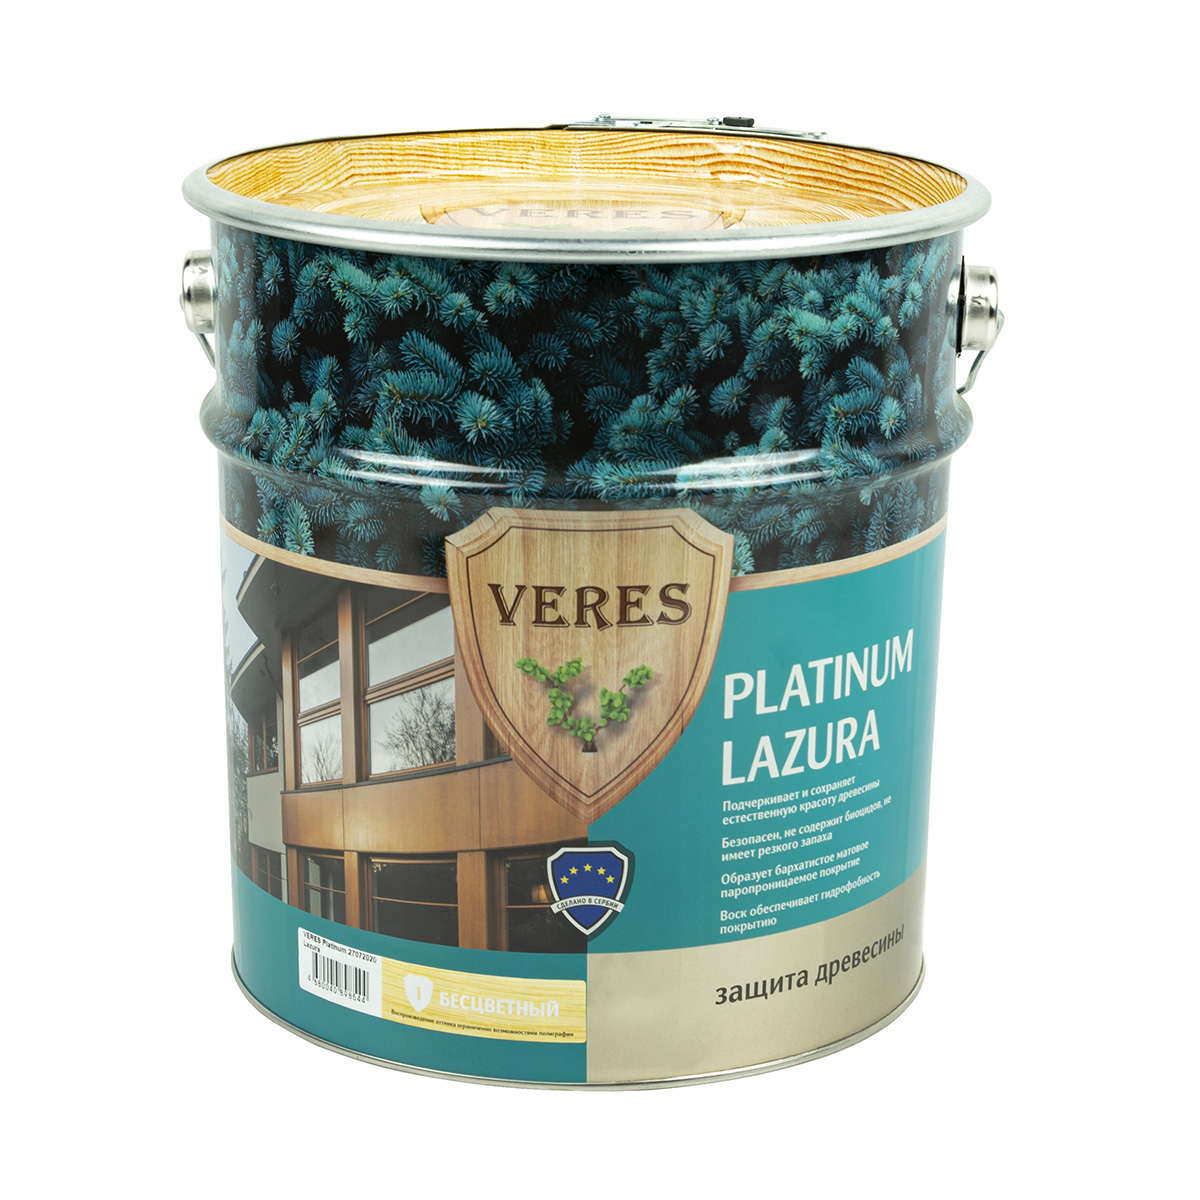 Пропитка Veres platinum lazura № 1 бесцветный 9 л